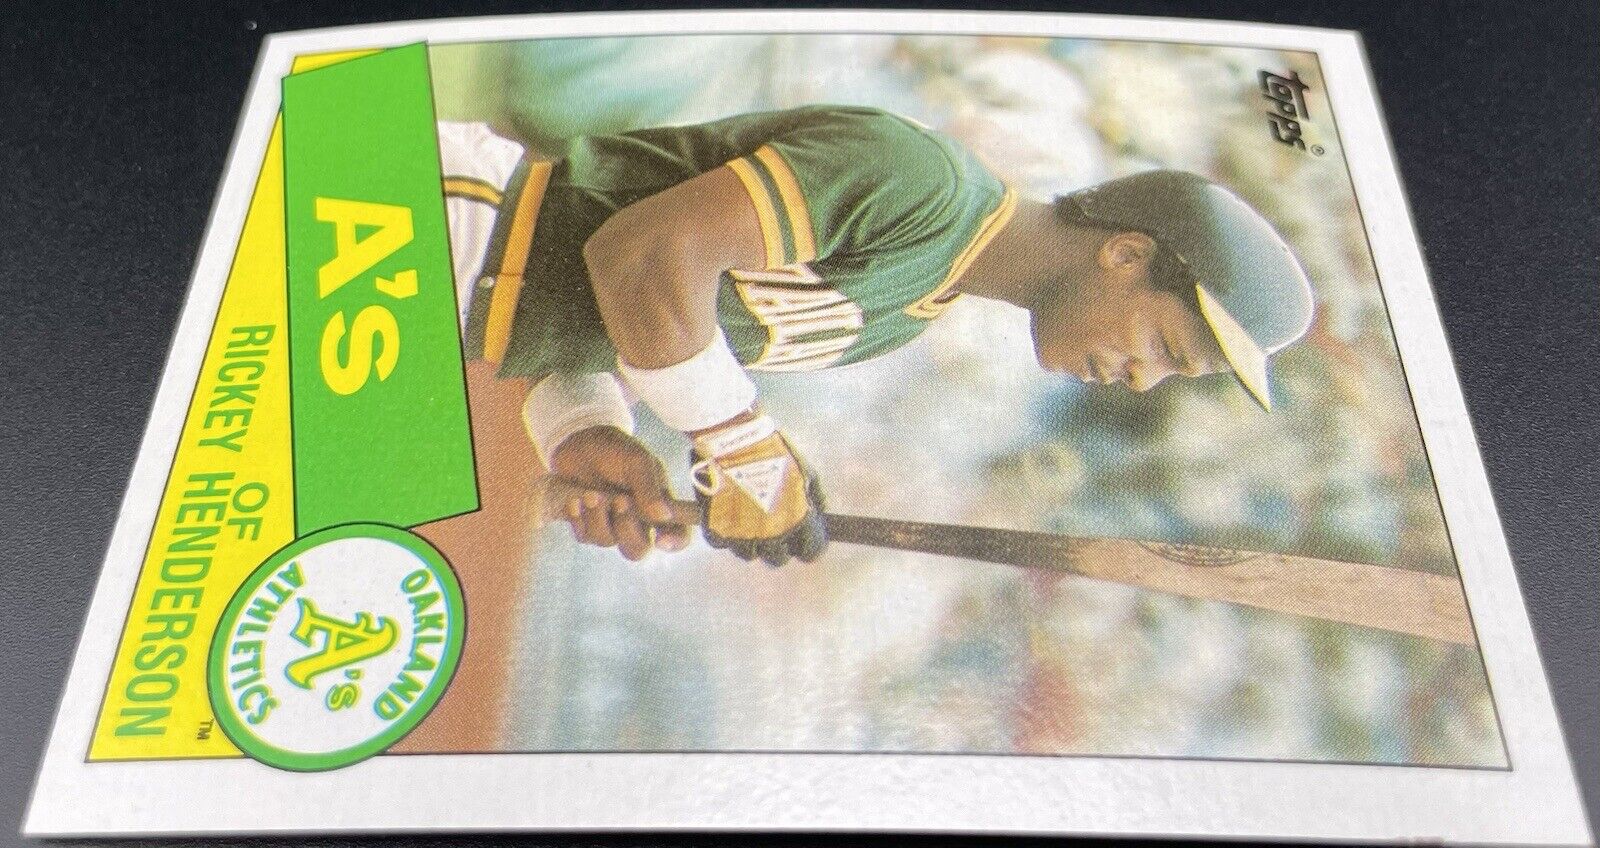 1985 Topps - #115 Rickey Henderson Oakland Athletics 💥⚾️💥